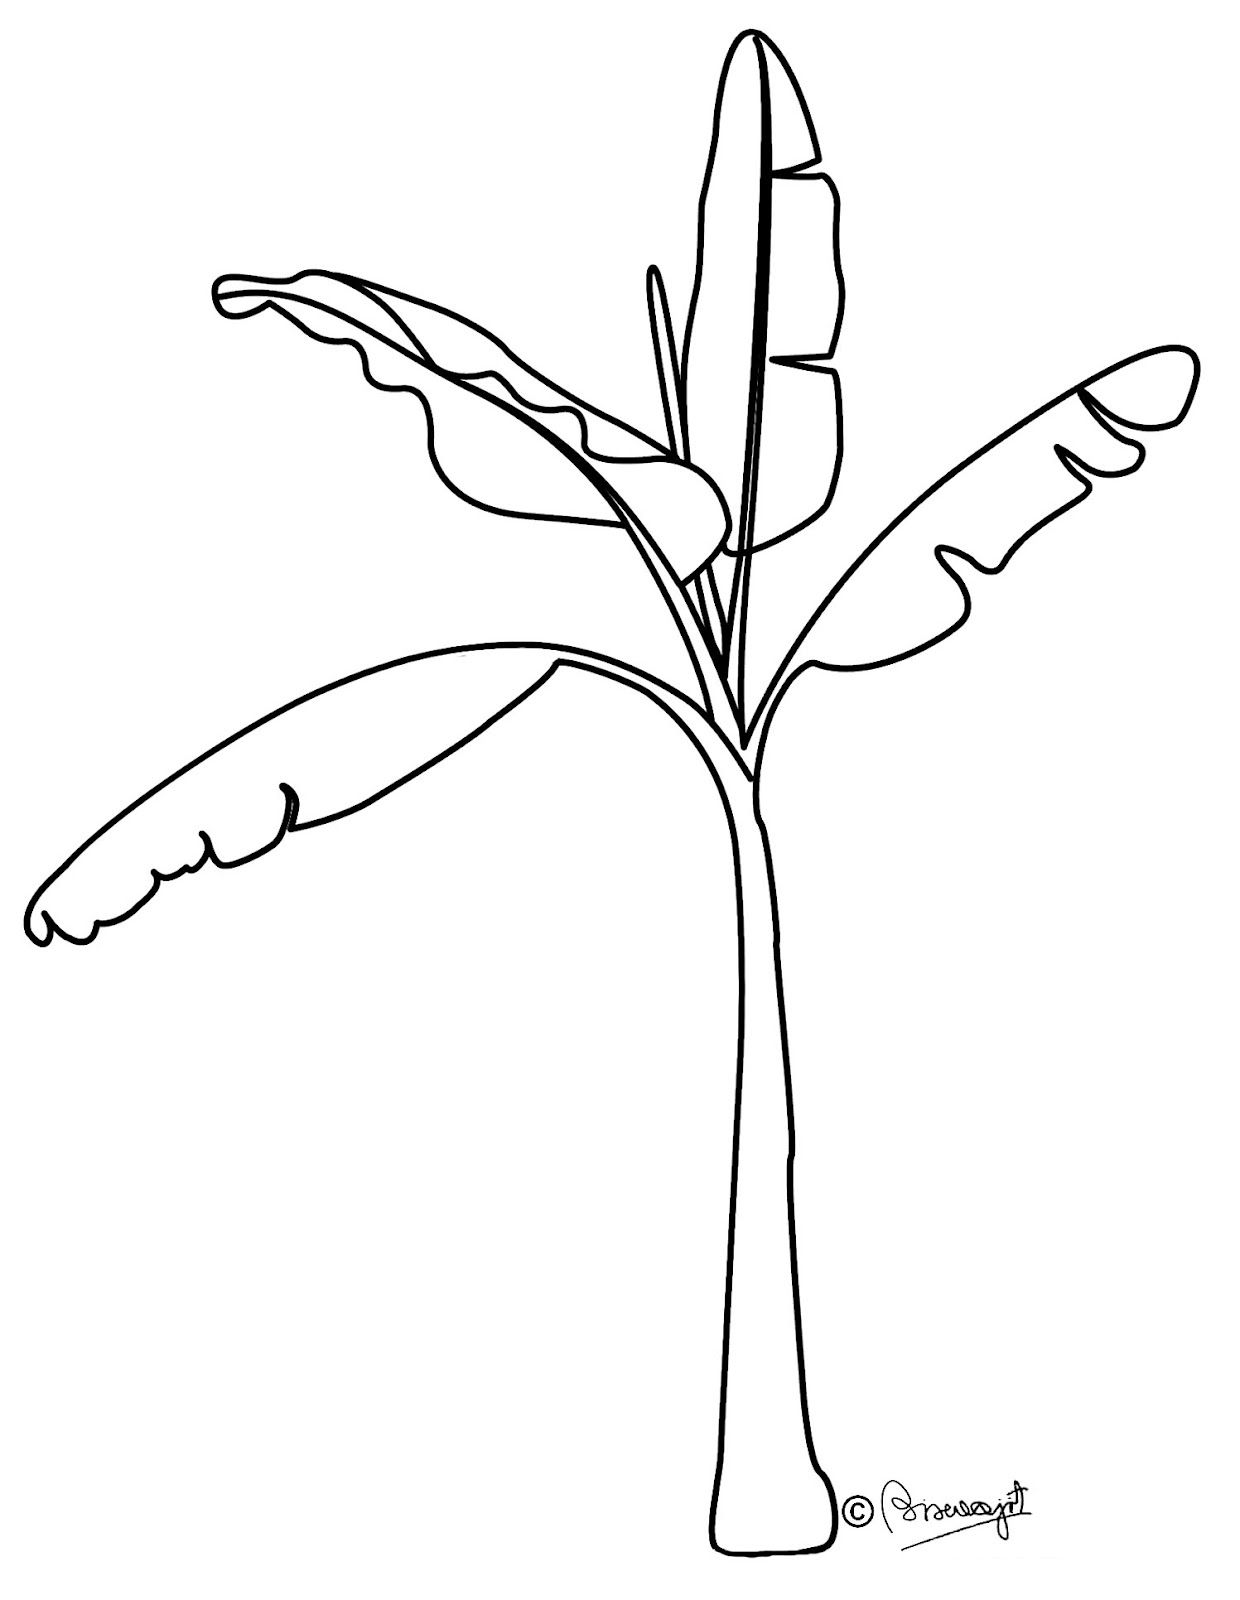 how to draw banana trees